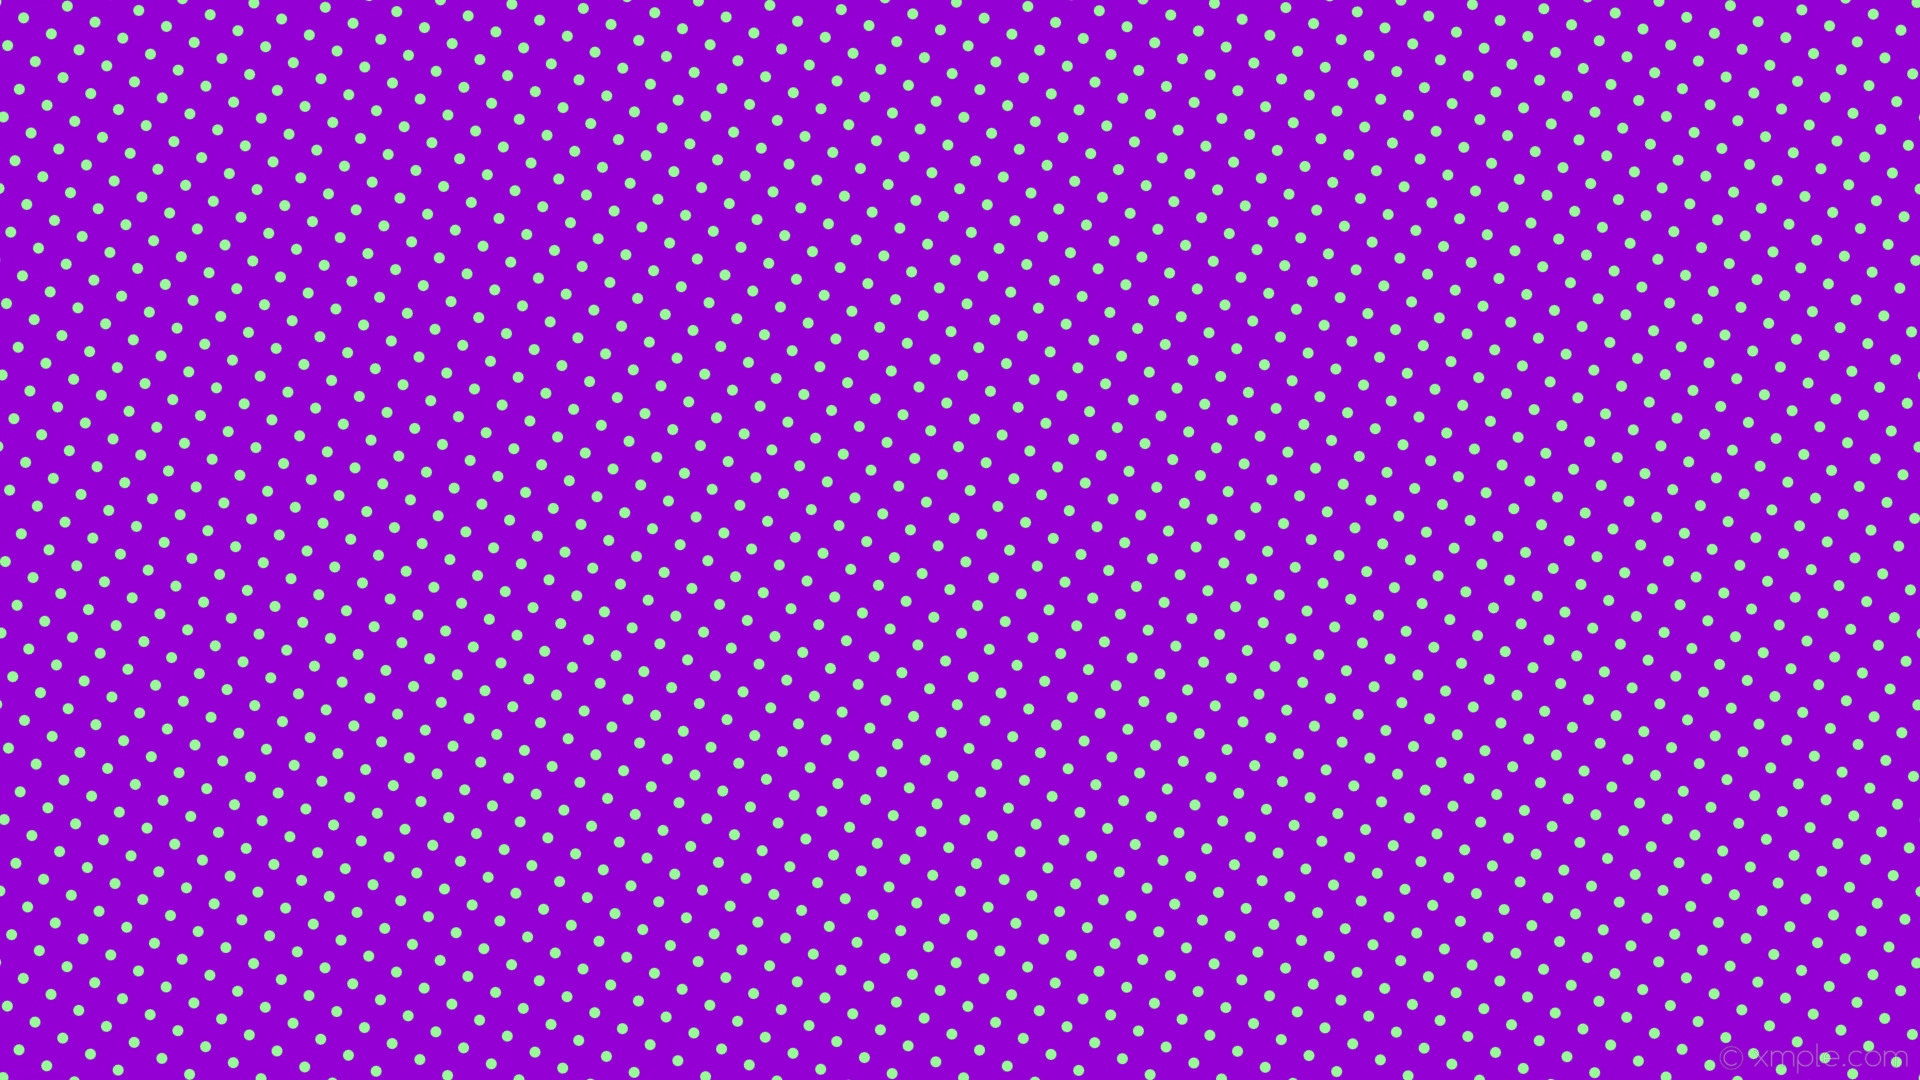 1920x1080 wallpaper spots purple green polka dots dark violet pale green #9400d3  #98fb98 330Â°